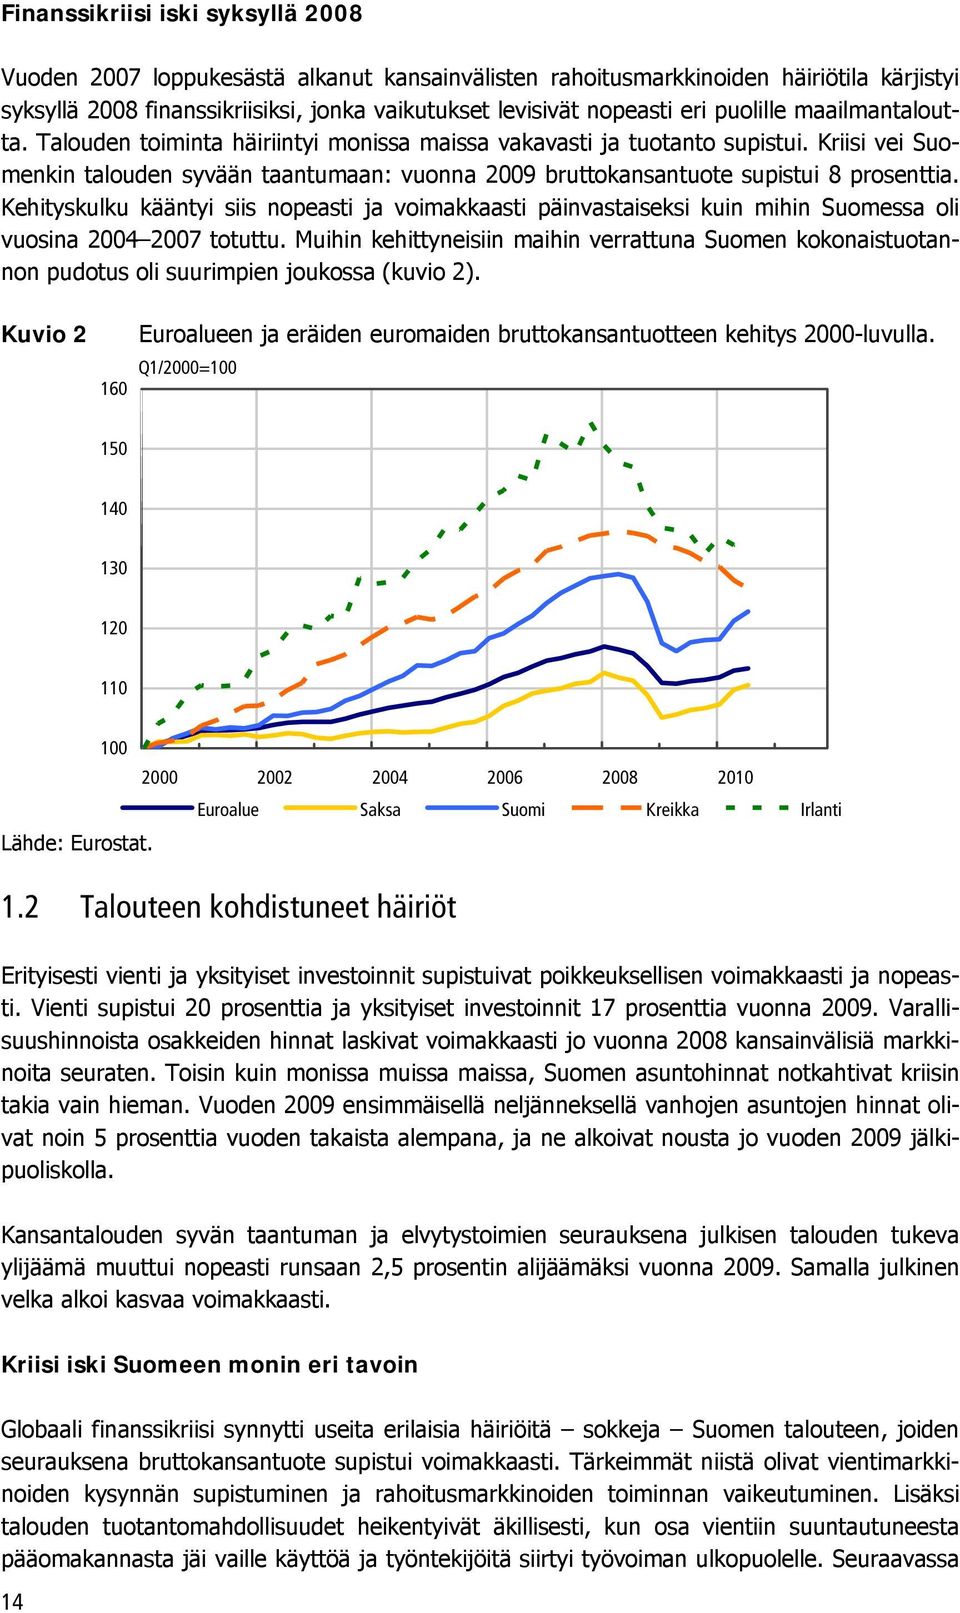 Kriisi vei Suomenkin talouden syvään taantumaan: vuonna 2009 bruttokansantuote supistui 8 prosenttia.